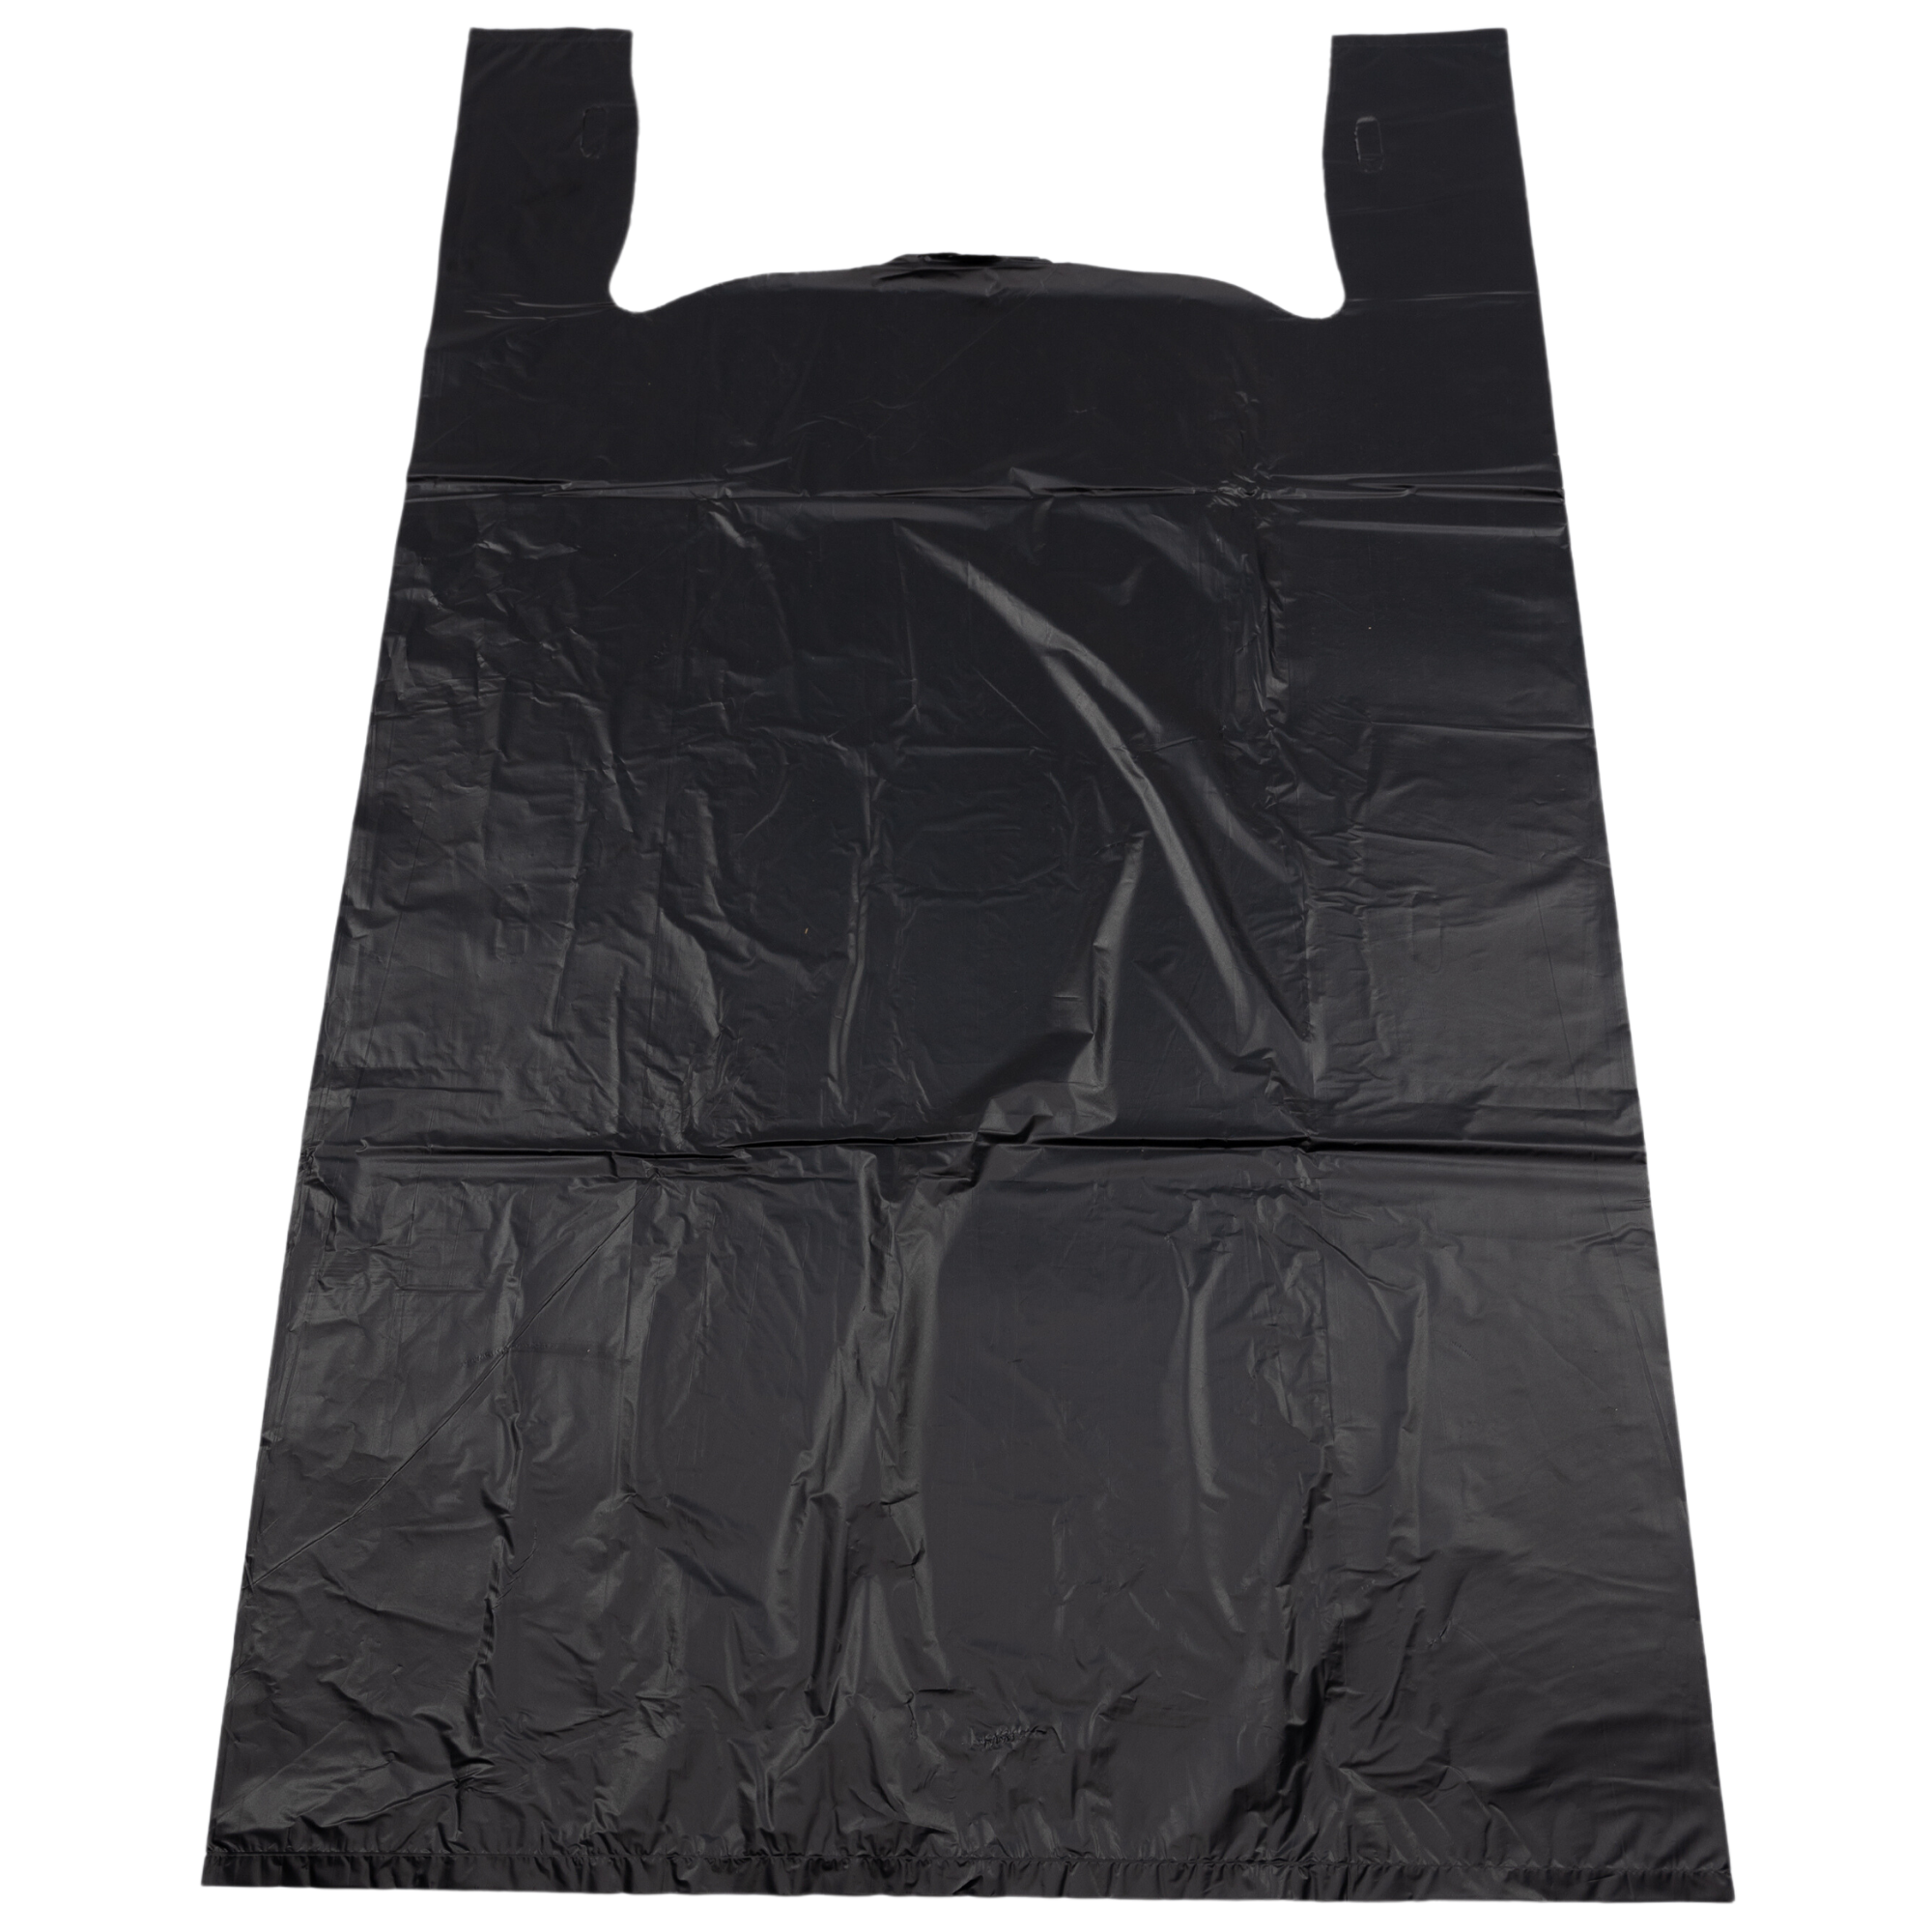 QTY=1150; HOT TOPIC Black Plastic Merchandise Bag 13-1/2 x 16